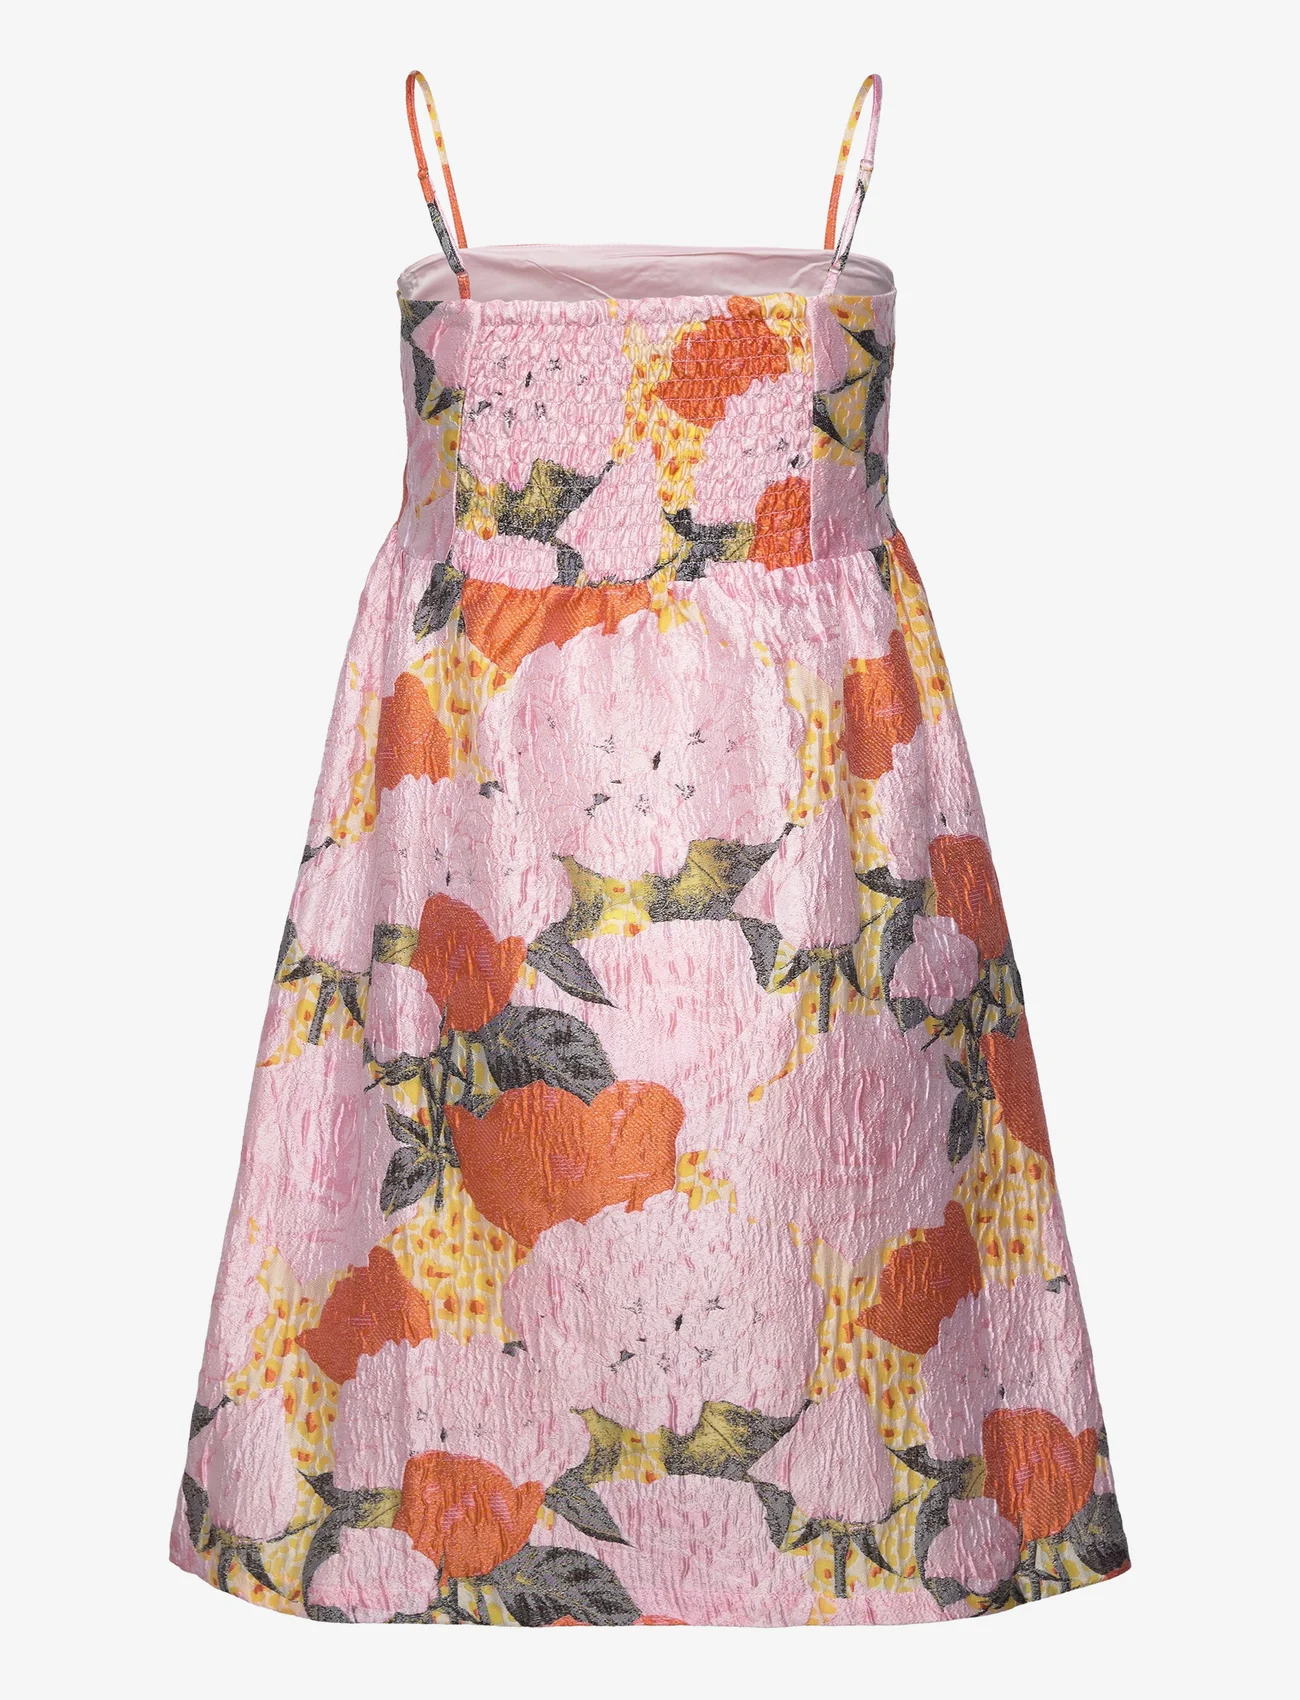 Rosemunde - Jacquard strap dress - odzież imprezowa w cenach outletowych - summer bouquet jacquard - 1